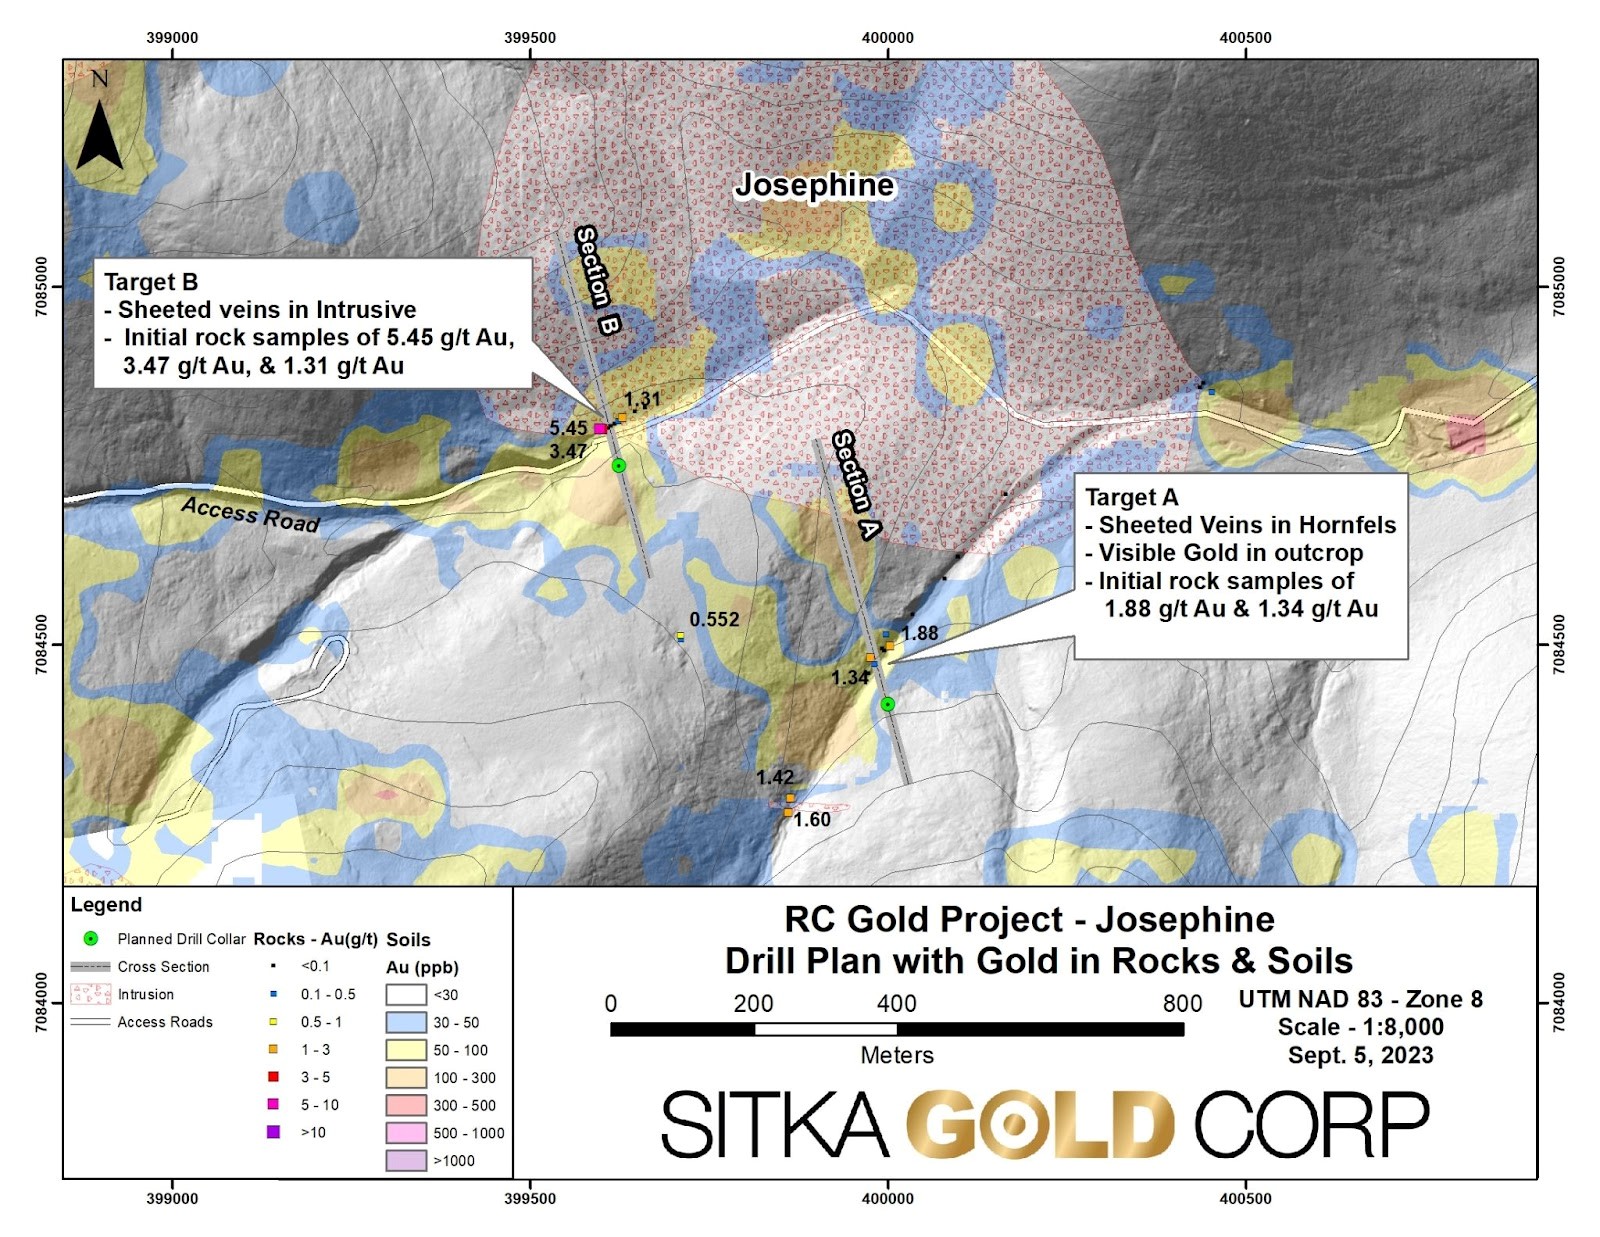 Sitka kann auch hochgradig: 3,81 Unzen Gold auf 1,2 Metern - höchster je gemessener Goldgehalt auf RC-Goldprojekt